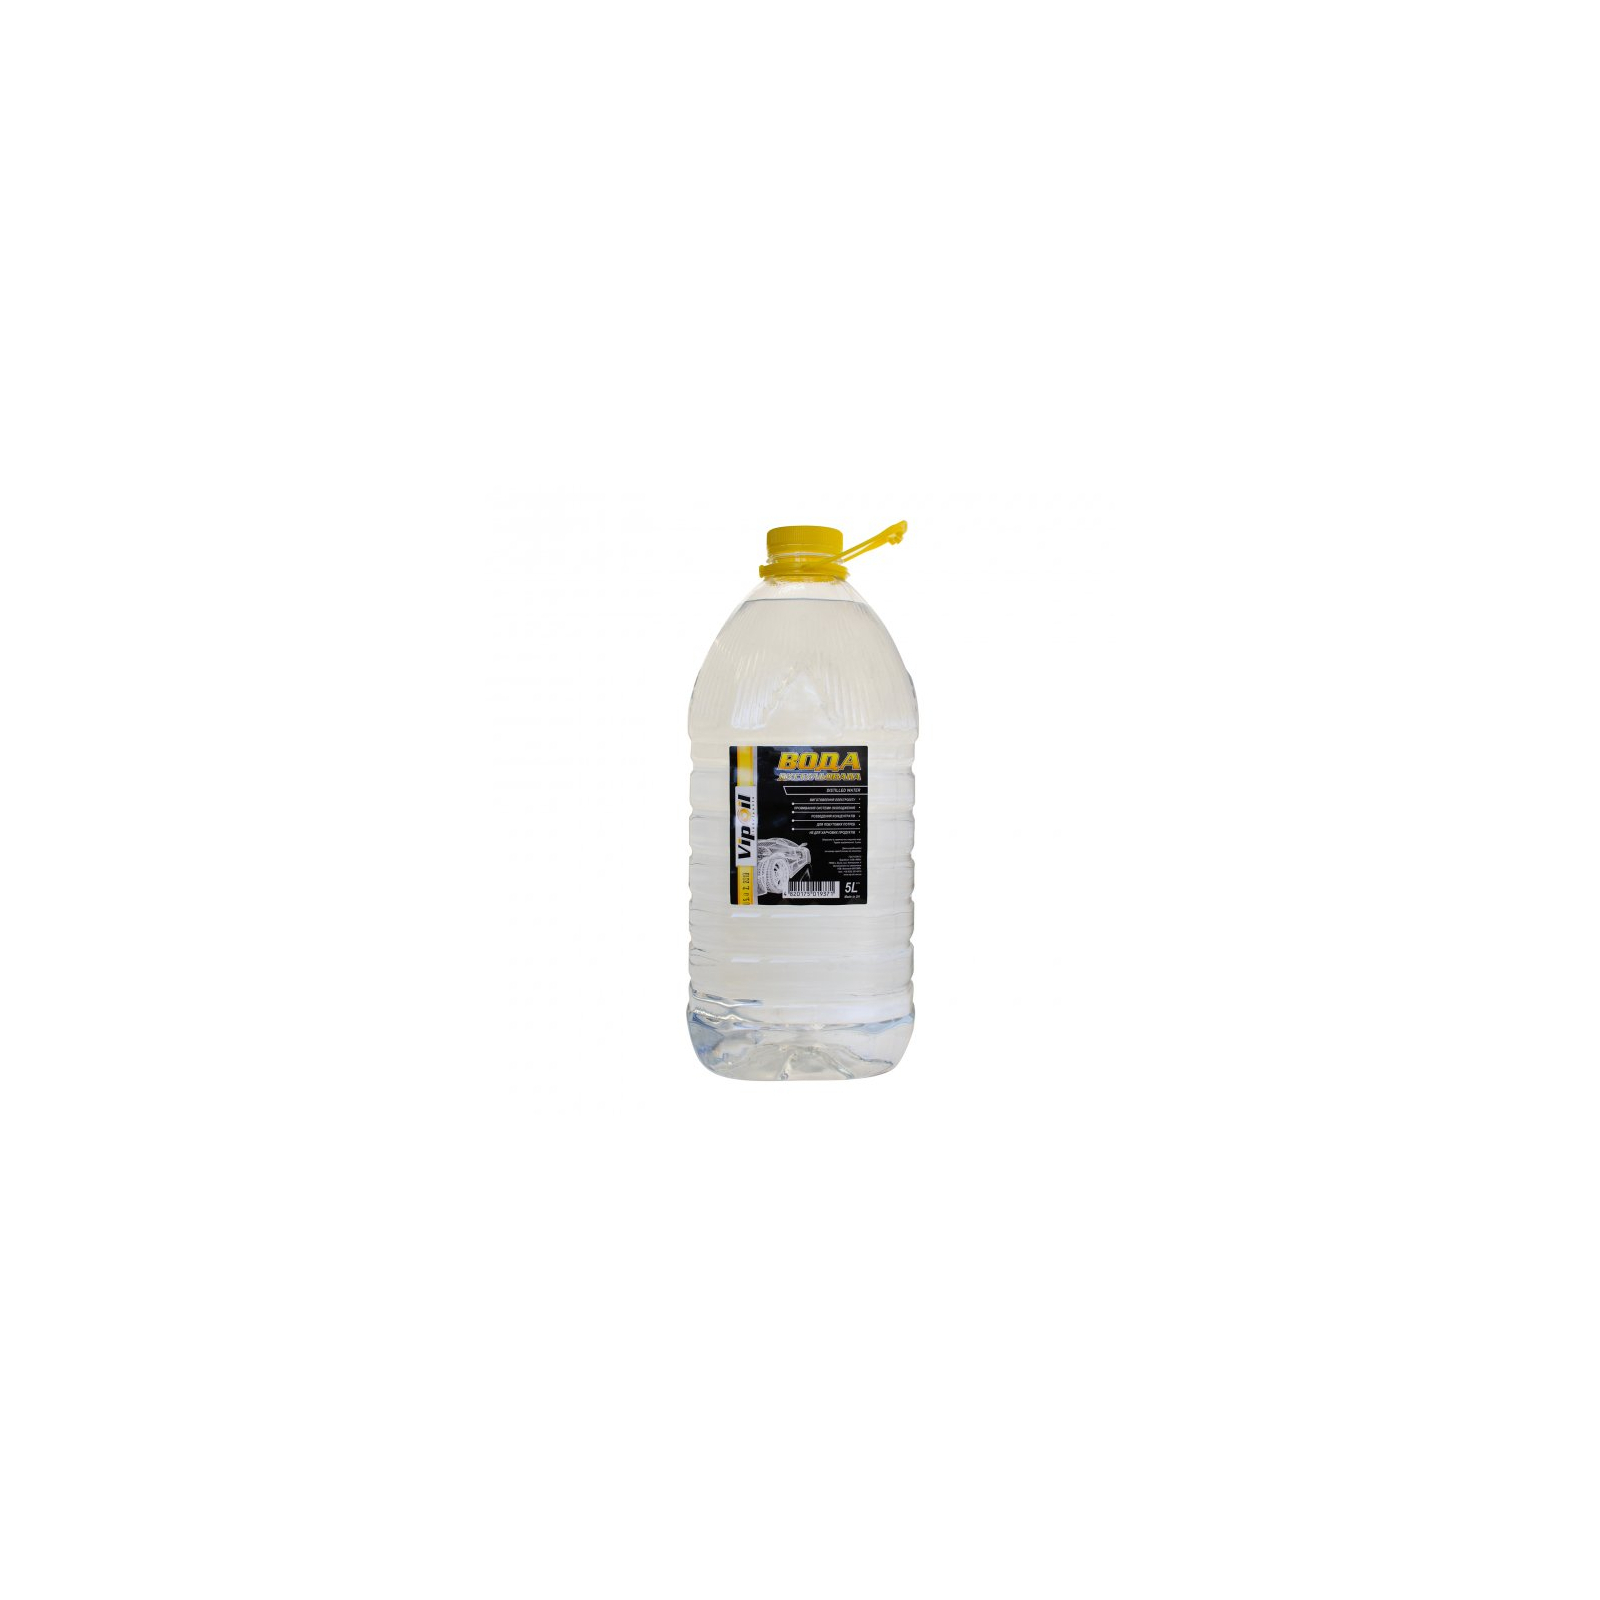 Вода дистиллированная VIPOIL 5л (0203828)